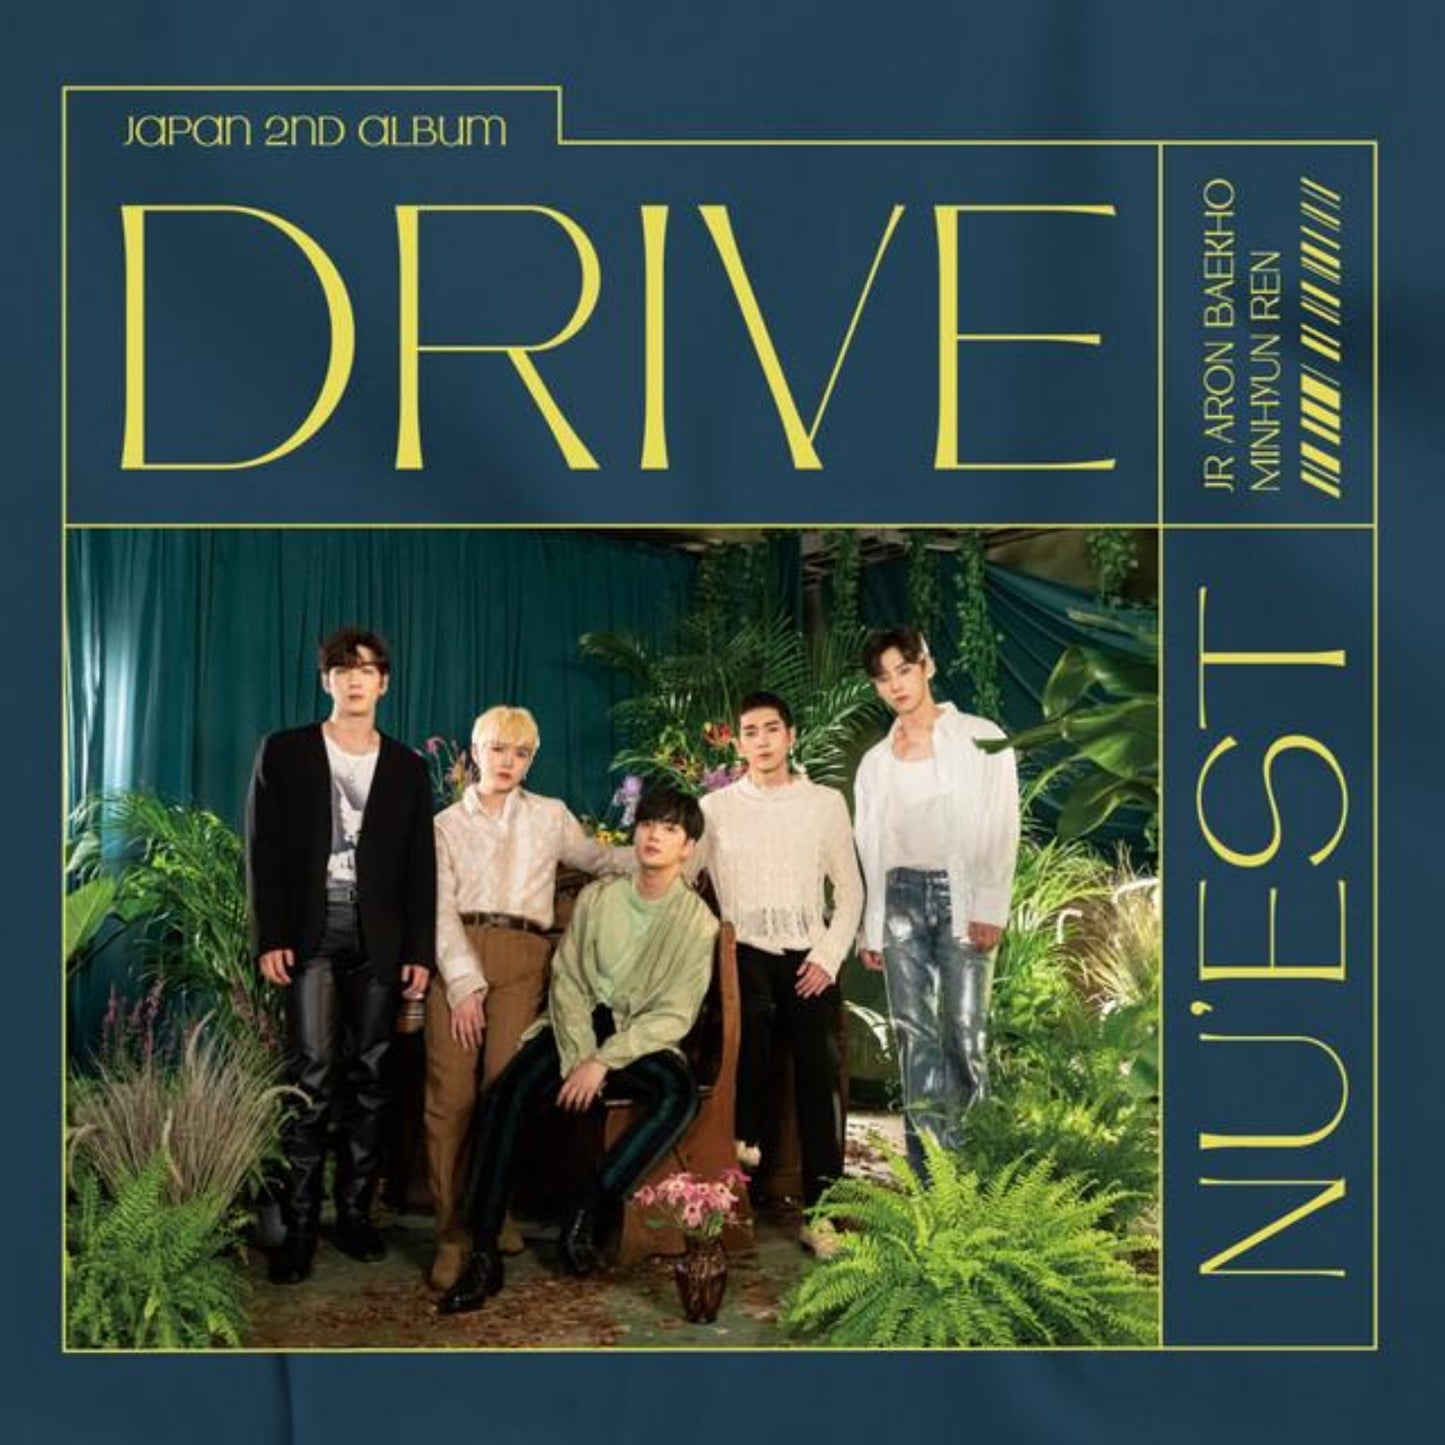 نيست  يابان البوم  |  (ONE) Nu'est - Japan album : Drive Standard Edition